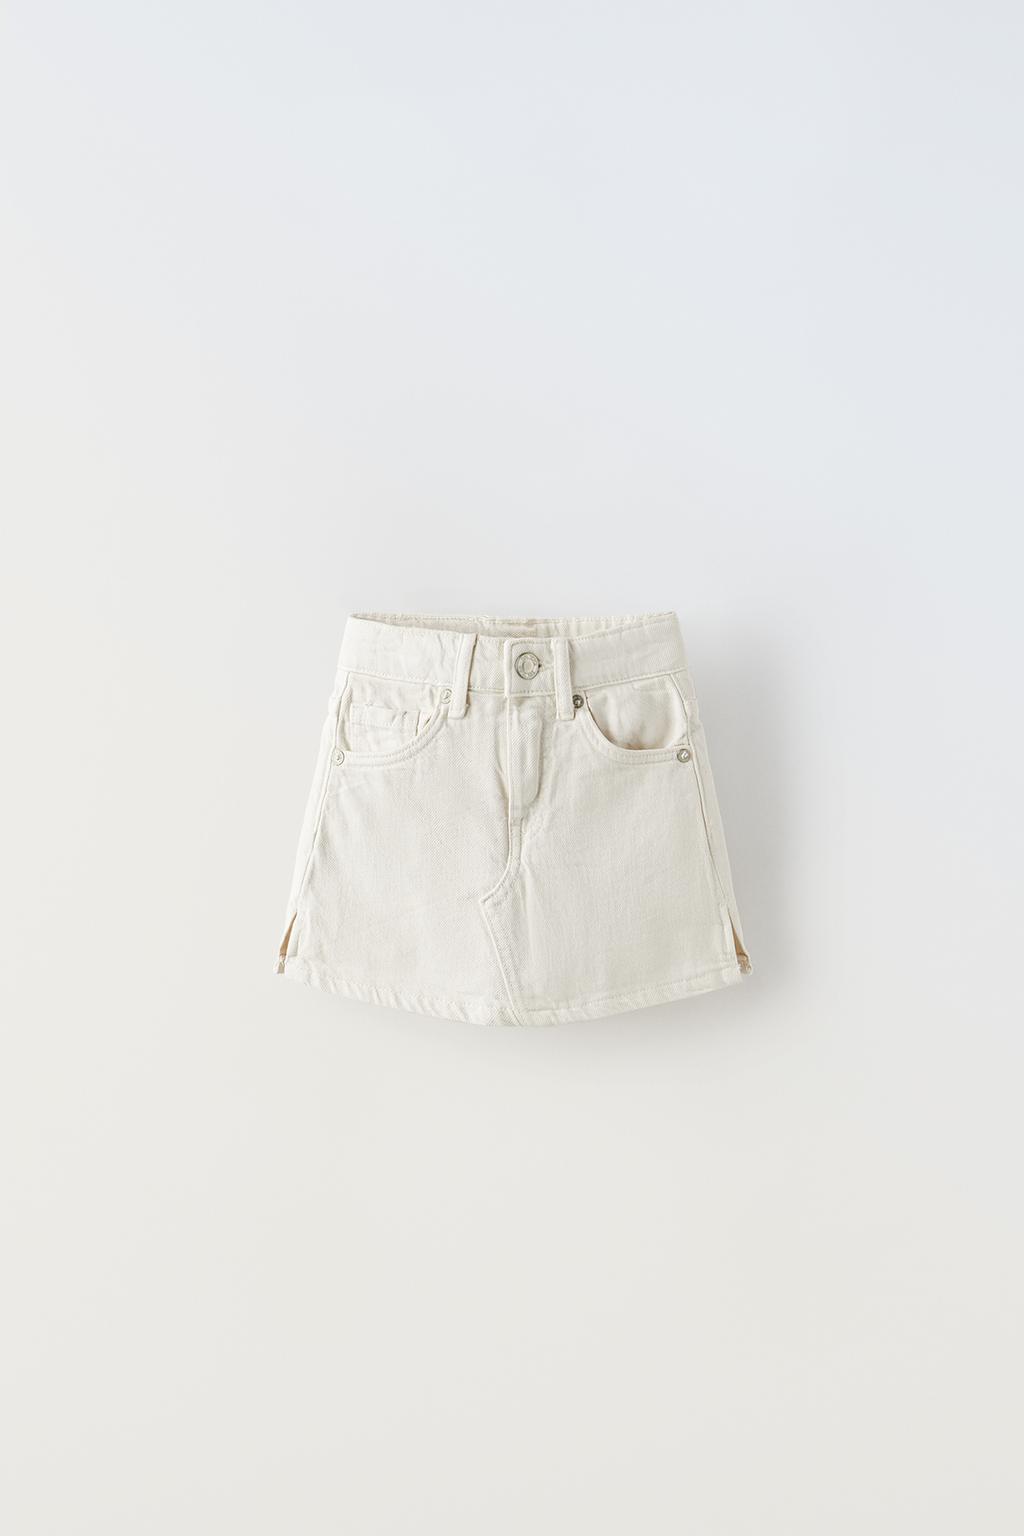 Джинсовая юбка-бермуда ZARA, экрю юбка zara джинсовая 44 размер